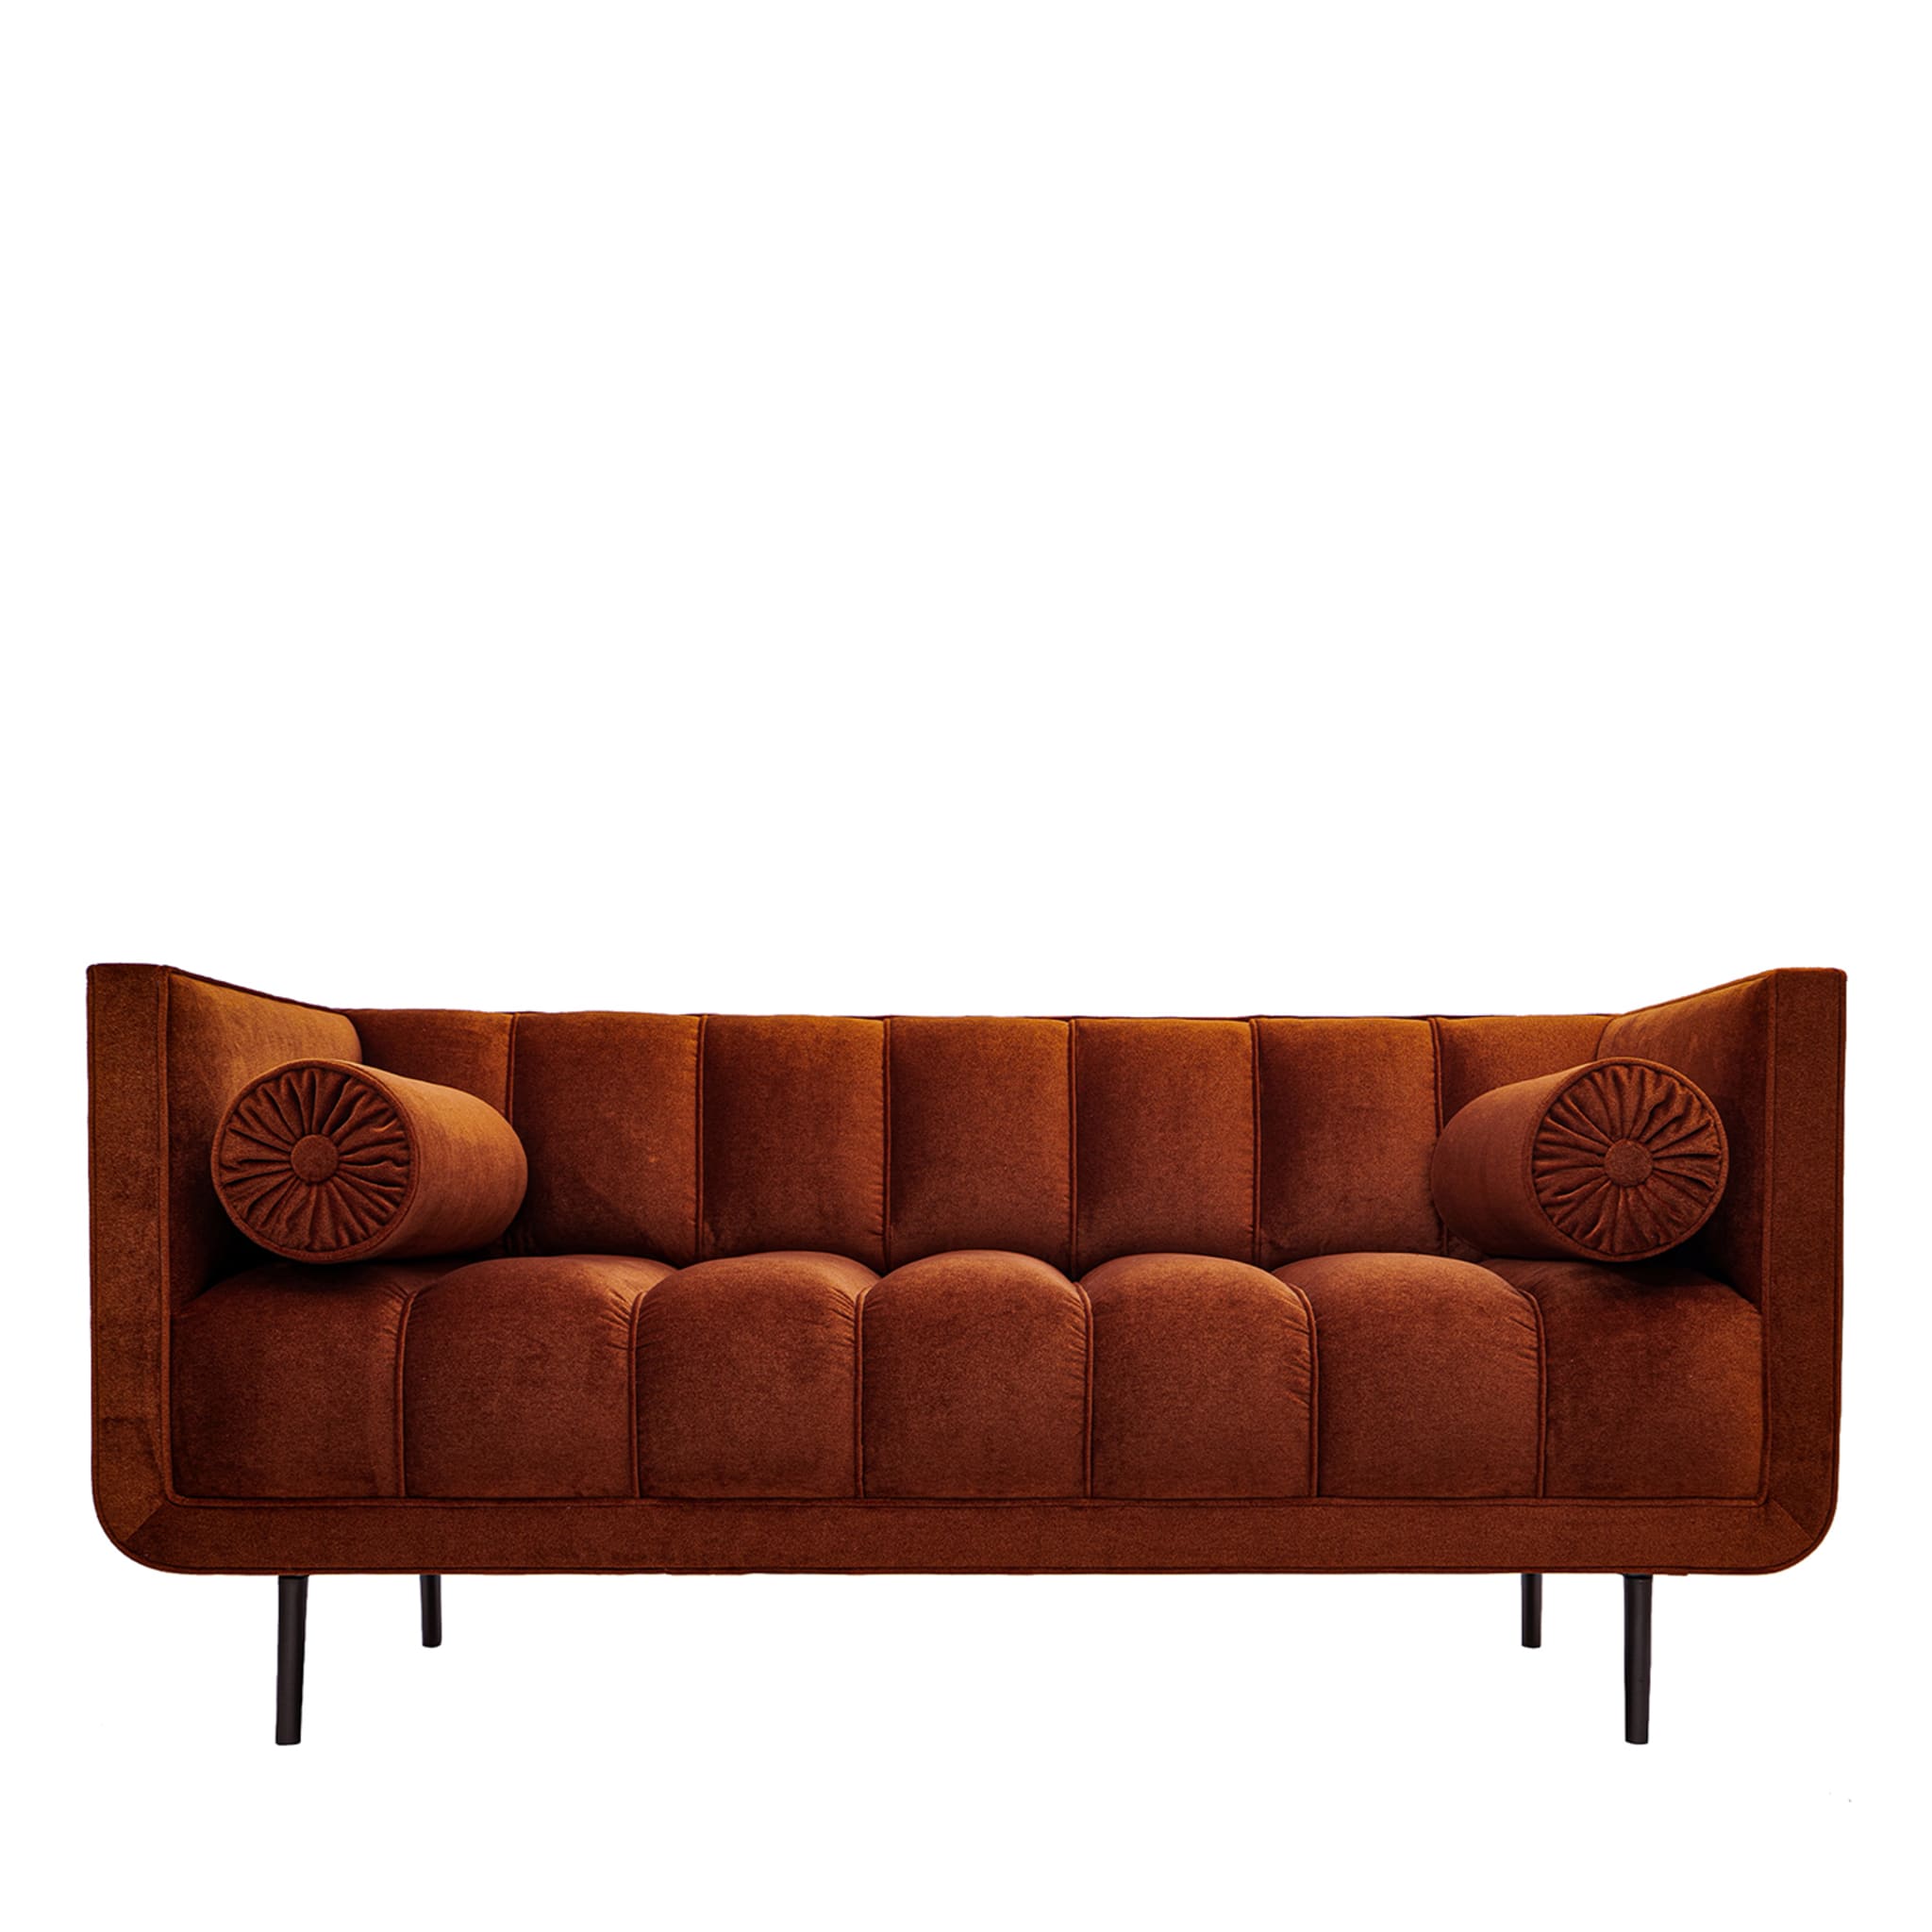 Rita 2-Seater Orange Velvet Sofa - Main view